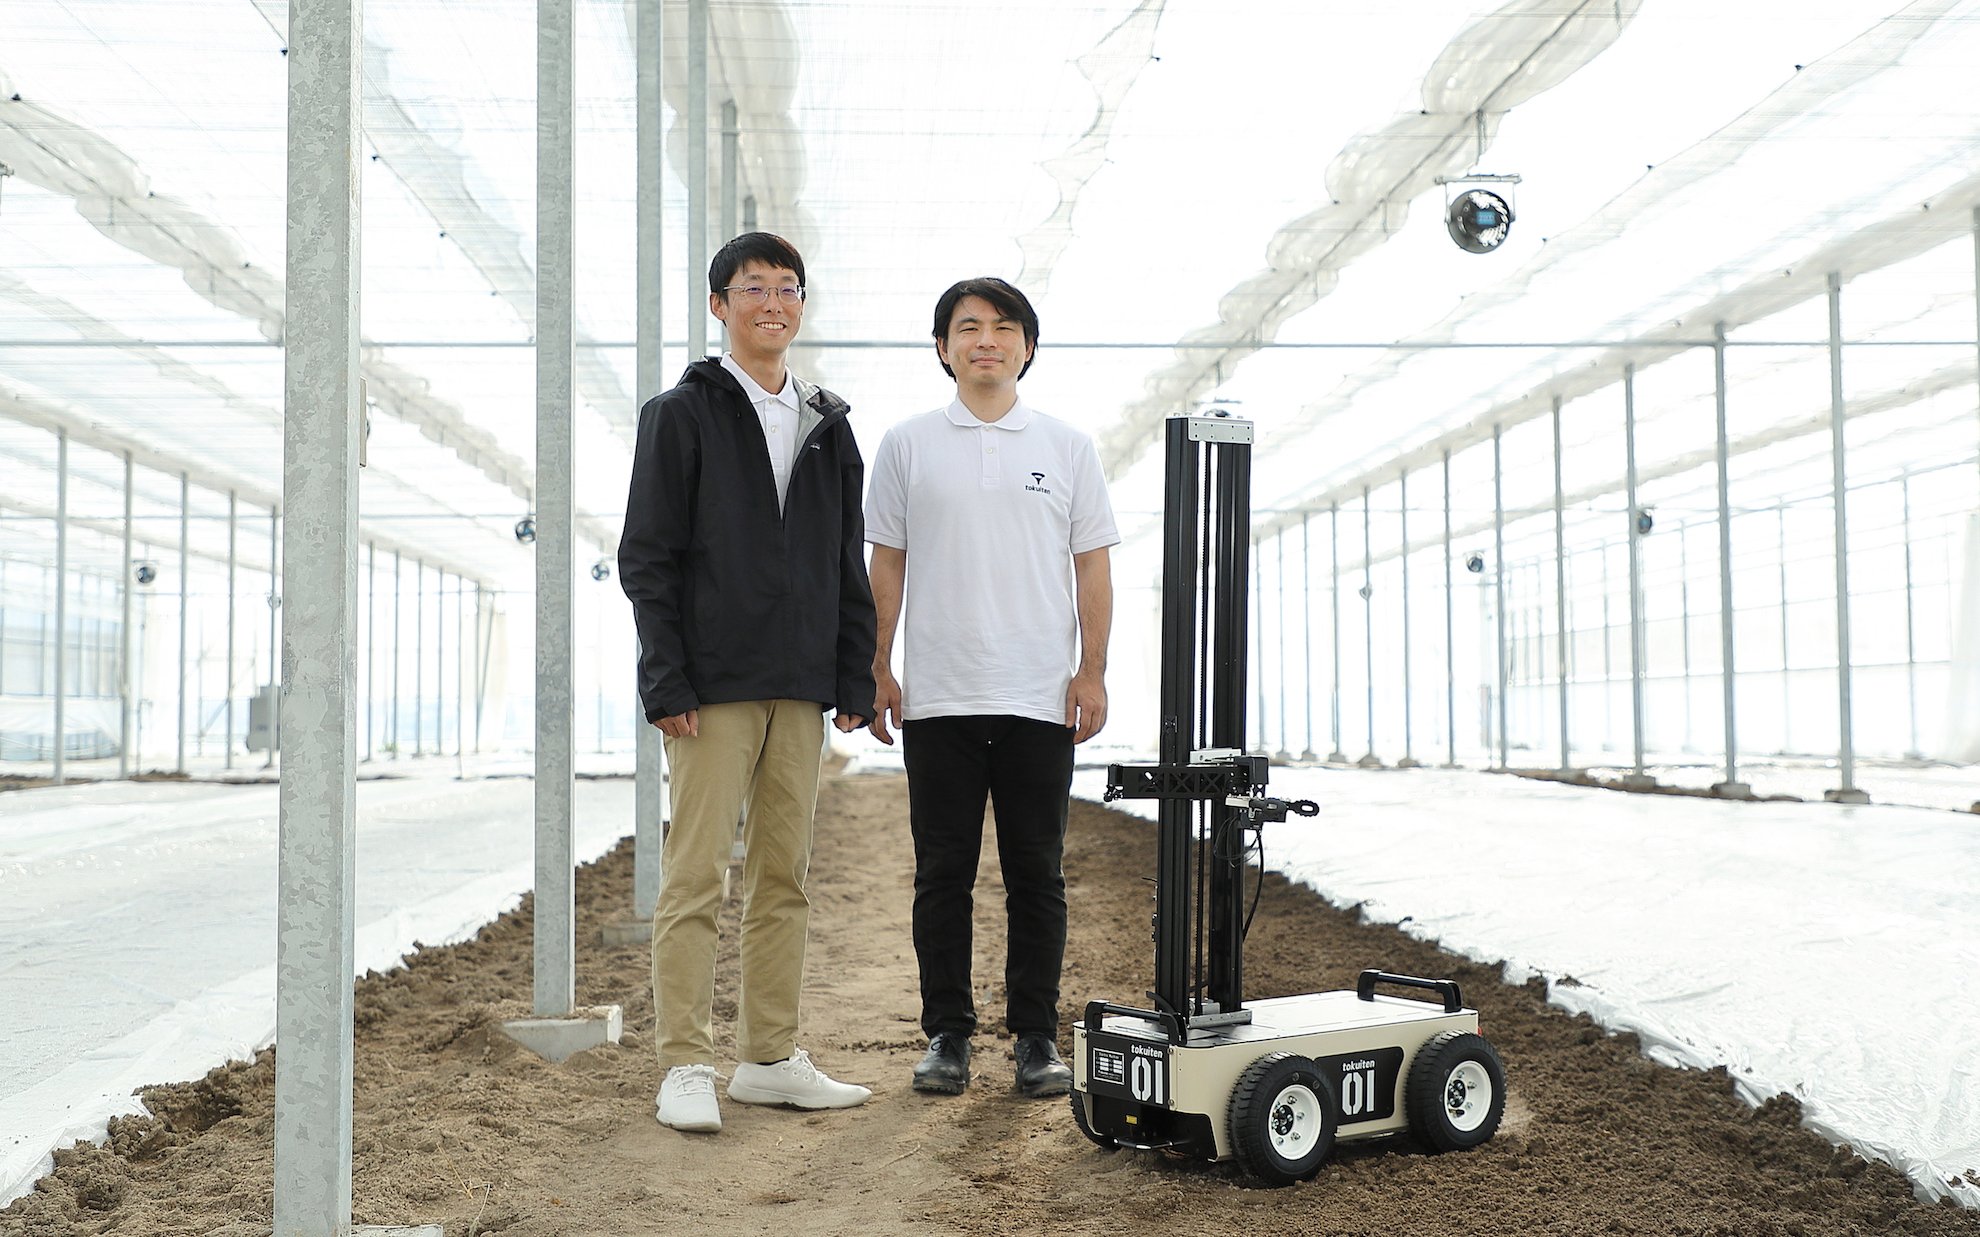 トクイテン共同創業者の豊吉隆一郎氏（左）と森裕紀氏（右）。豊吉氏はMisocaの創業者でもある起業家。森氏は早稲田大学の研究院准教授でロボット研究者。